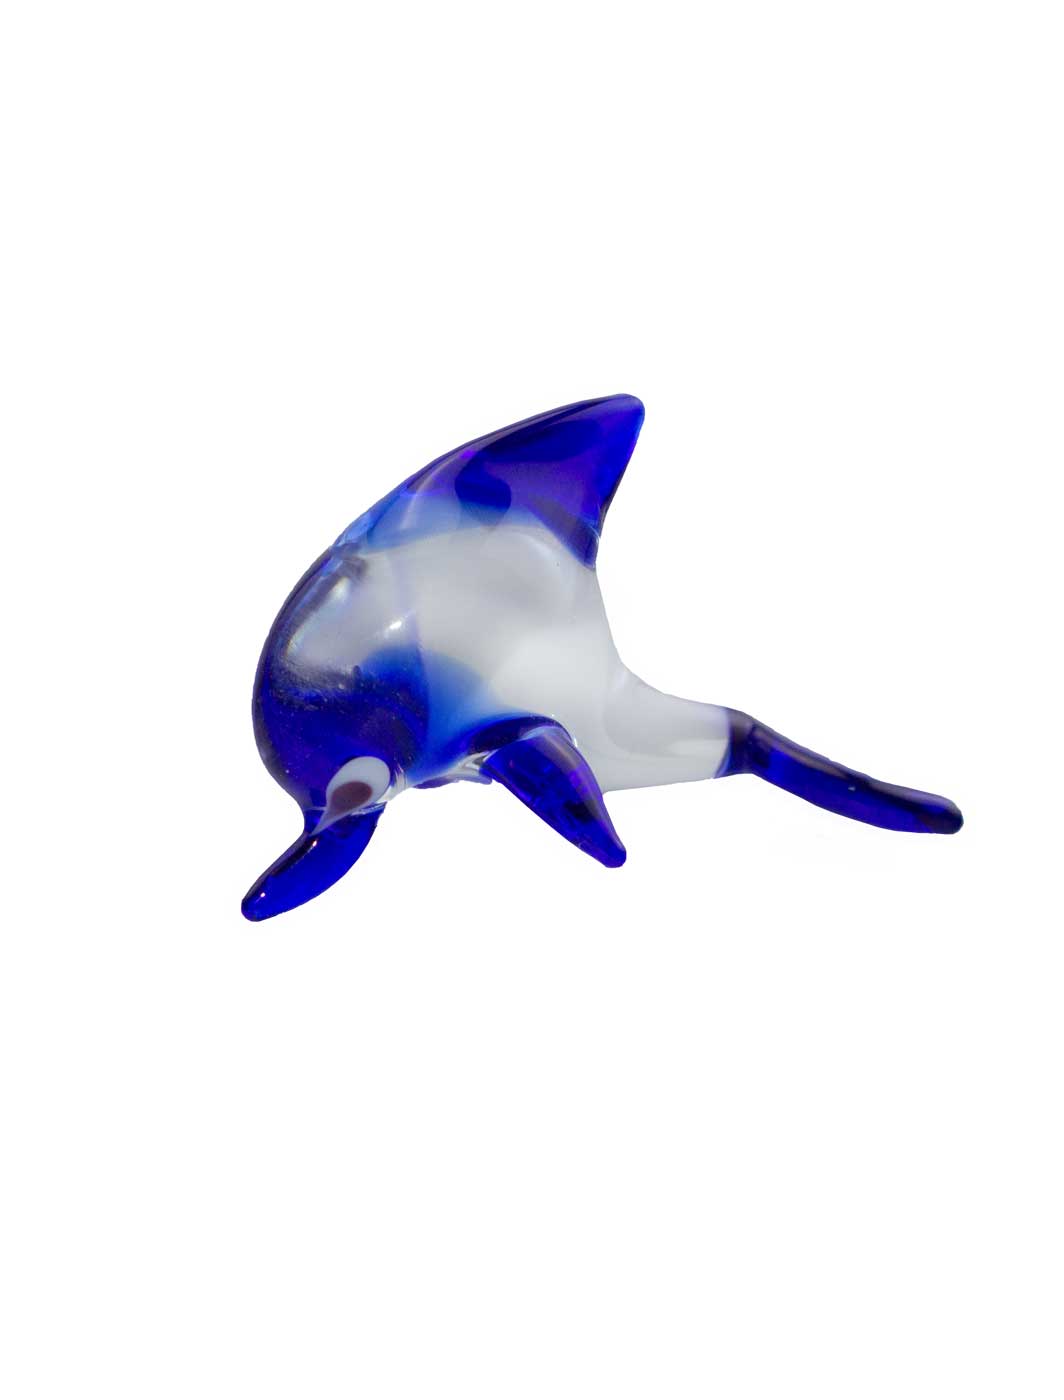 Glasfigur Delphin klein